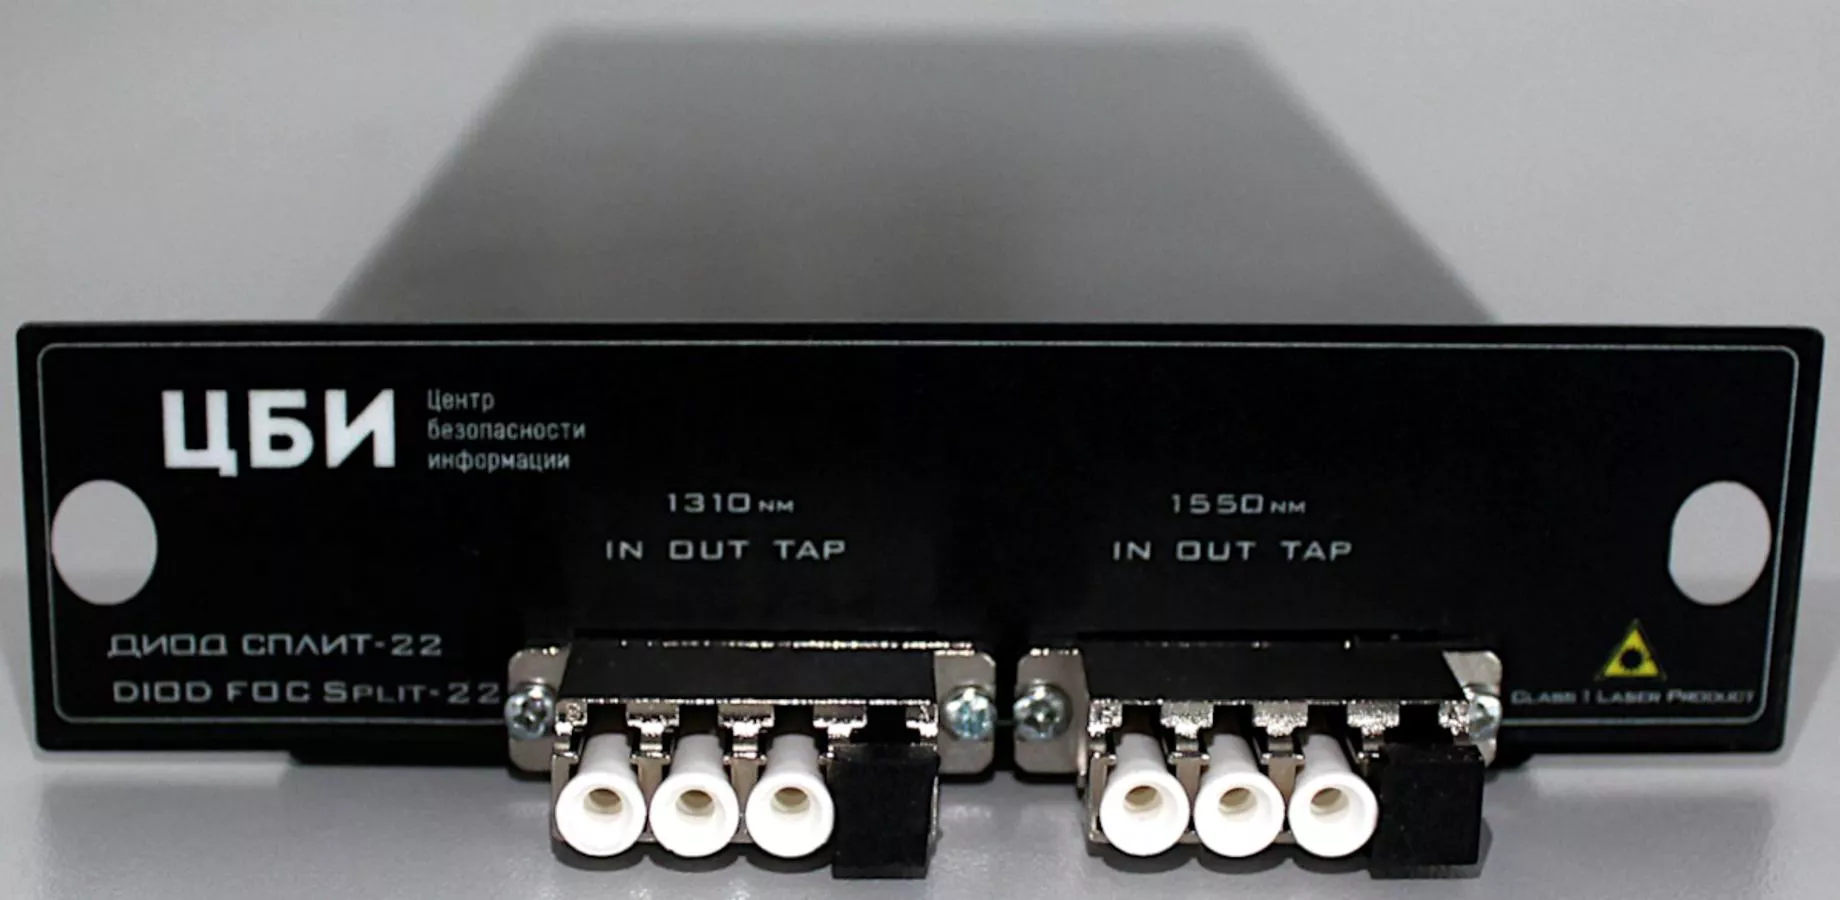 Техническое средство дублирования канала данных, передаваемых по волоконно-оптическим линий связи, с функцией изоляции дублированного сигнала Центр безопасности информации "ДИОД СПЛИТ – 22" (DIOD FOC Split-22)